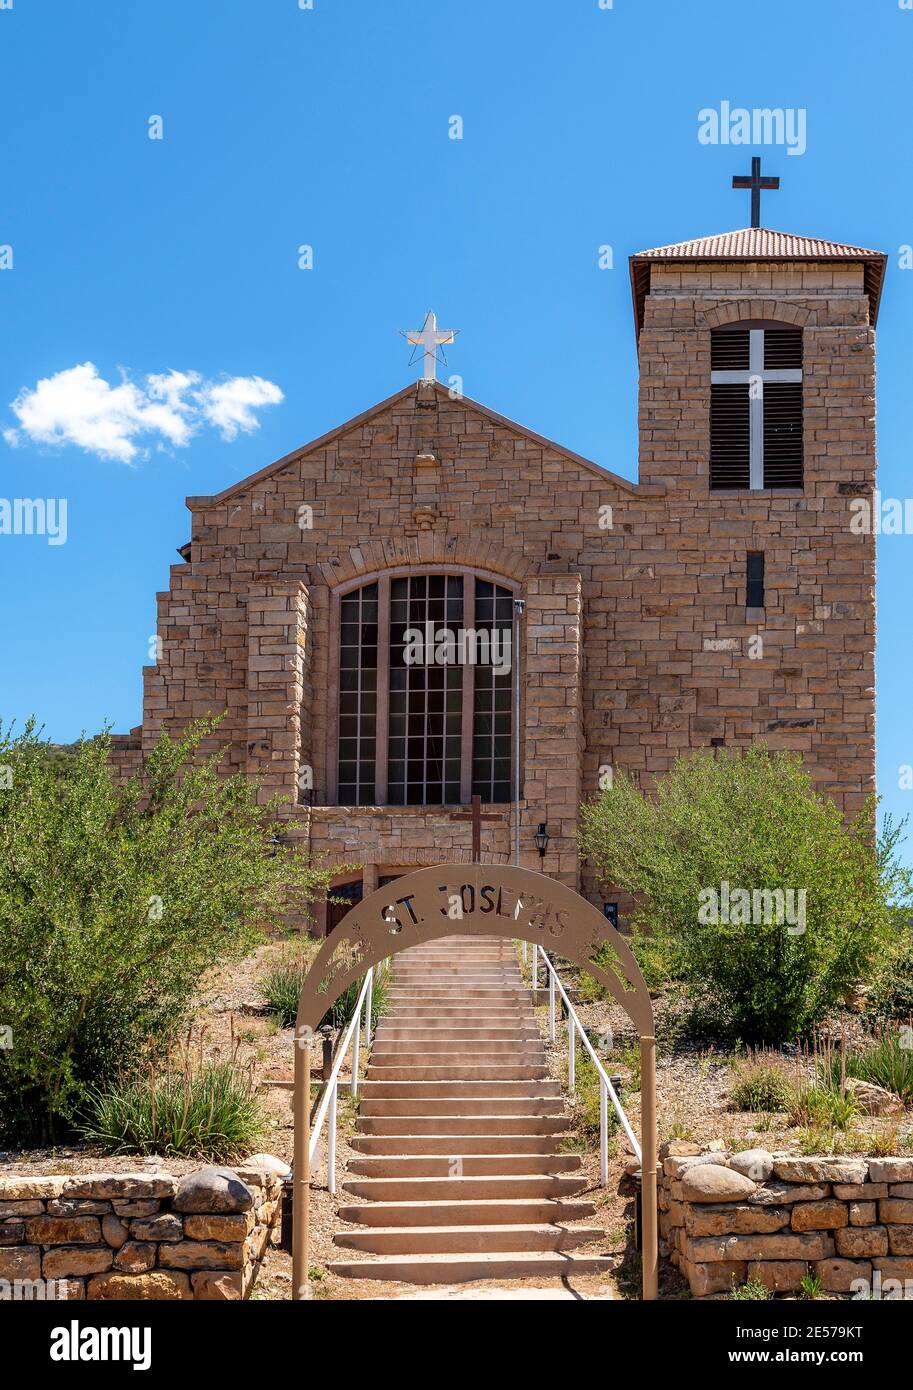 St Joseph Apache Mission Church, St Joseph's Church in Mescalero, New Mexico, USA. Stock Photo